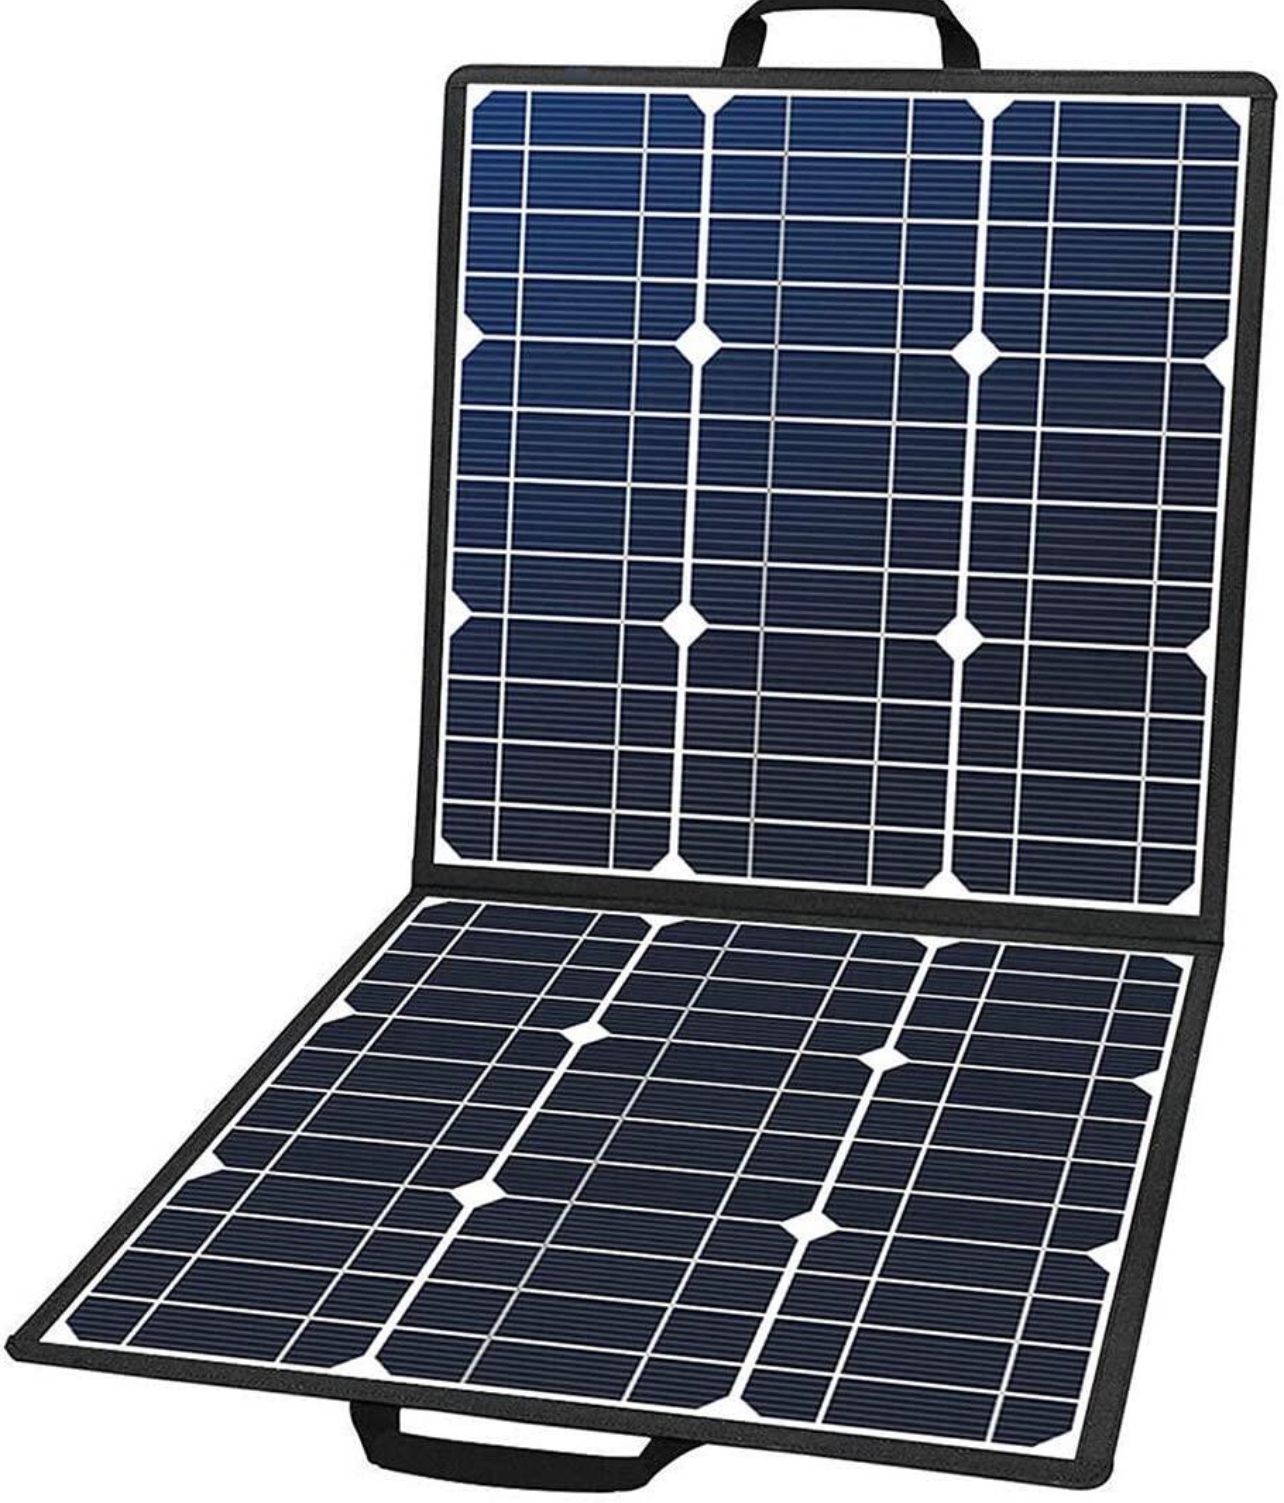 Flashfish SP18100 (18V/100W) BLACK Portable Solar Panel - 1 Year Local Warranty